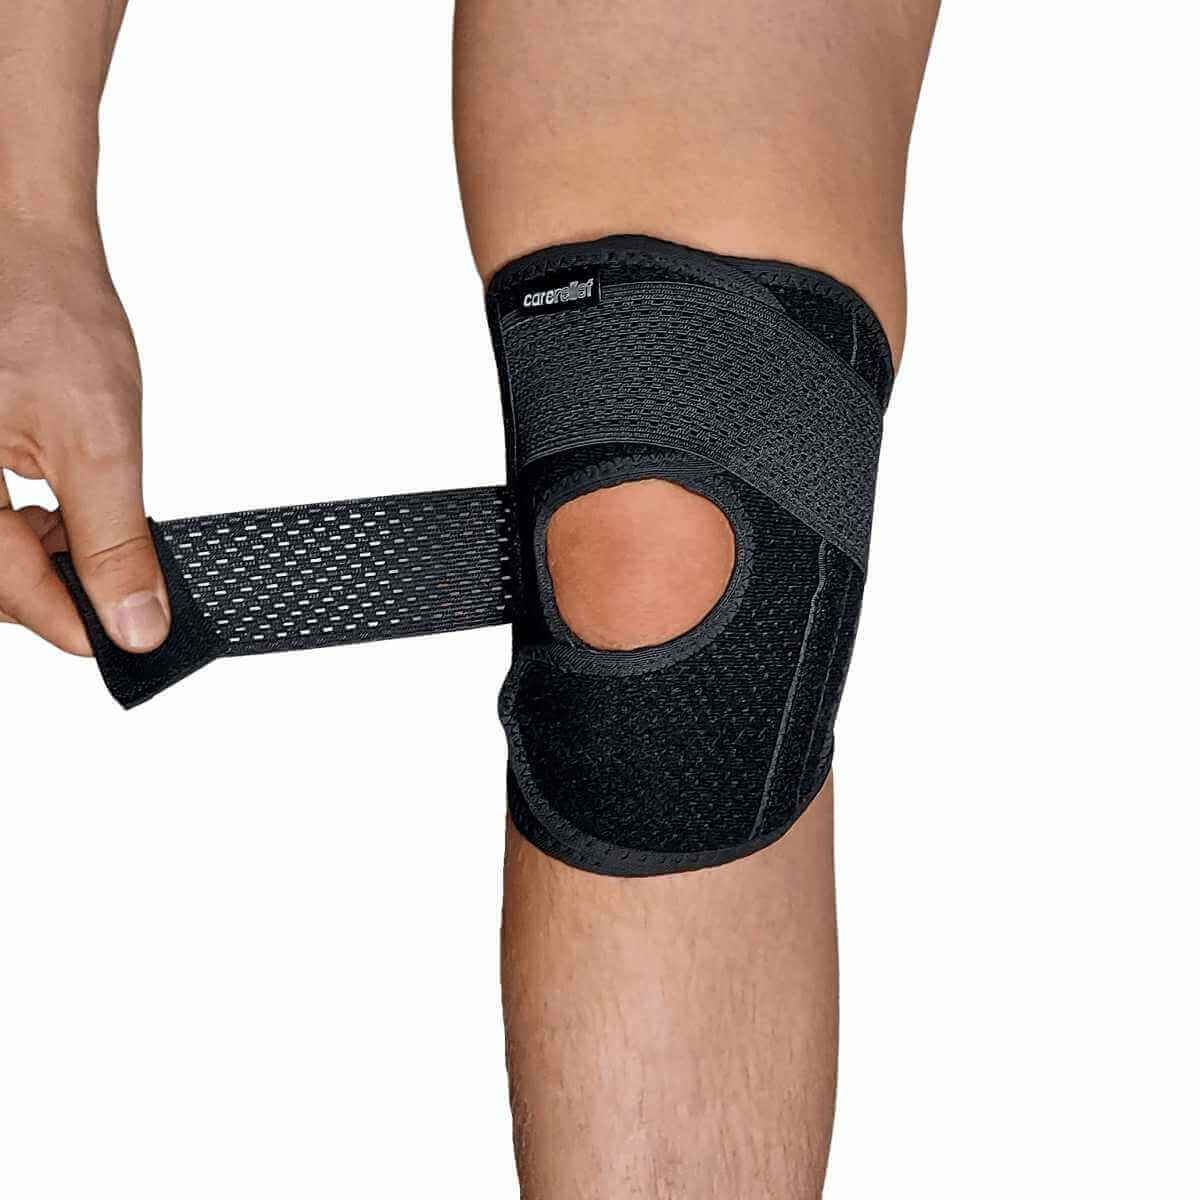 Knæstøtte med stålfjedre og åben patella støtter og aflaster ved springerknæ og smerter fra menisken. KN25 er et ultra let knæbind med komfort og støtte til et overbelastet og skadet knæ. 